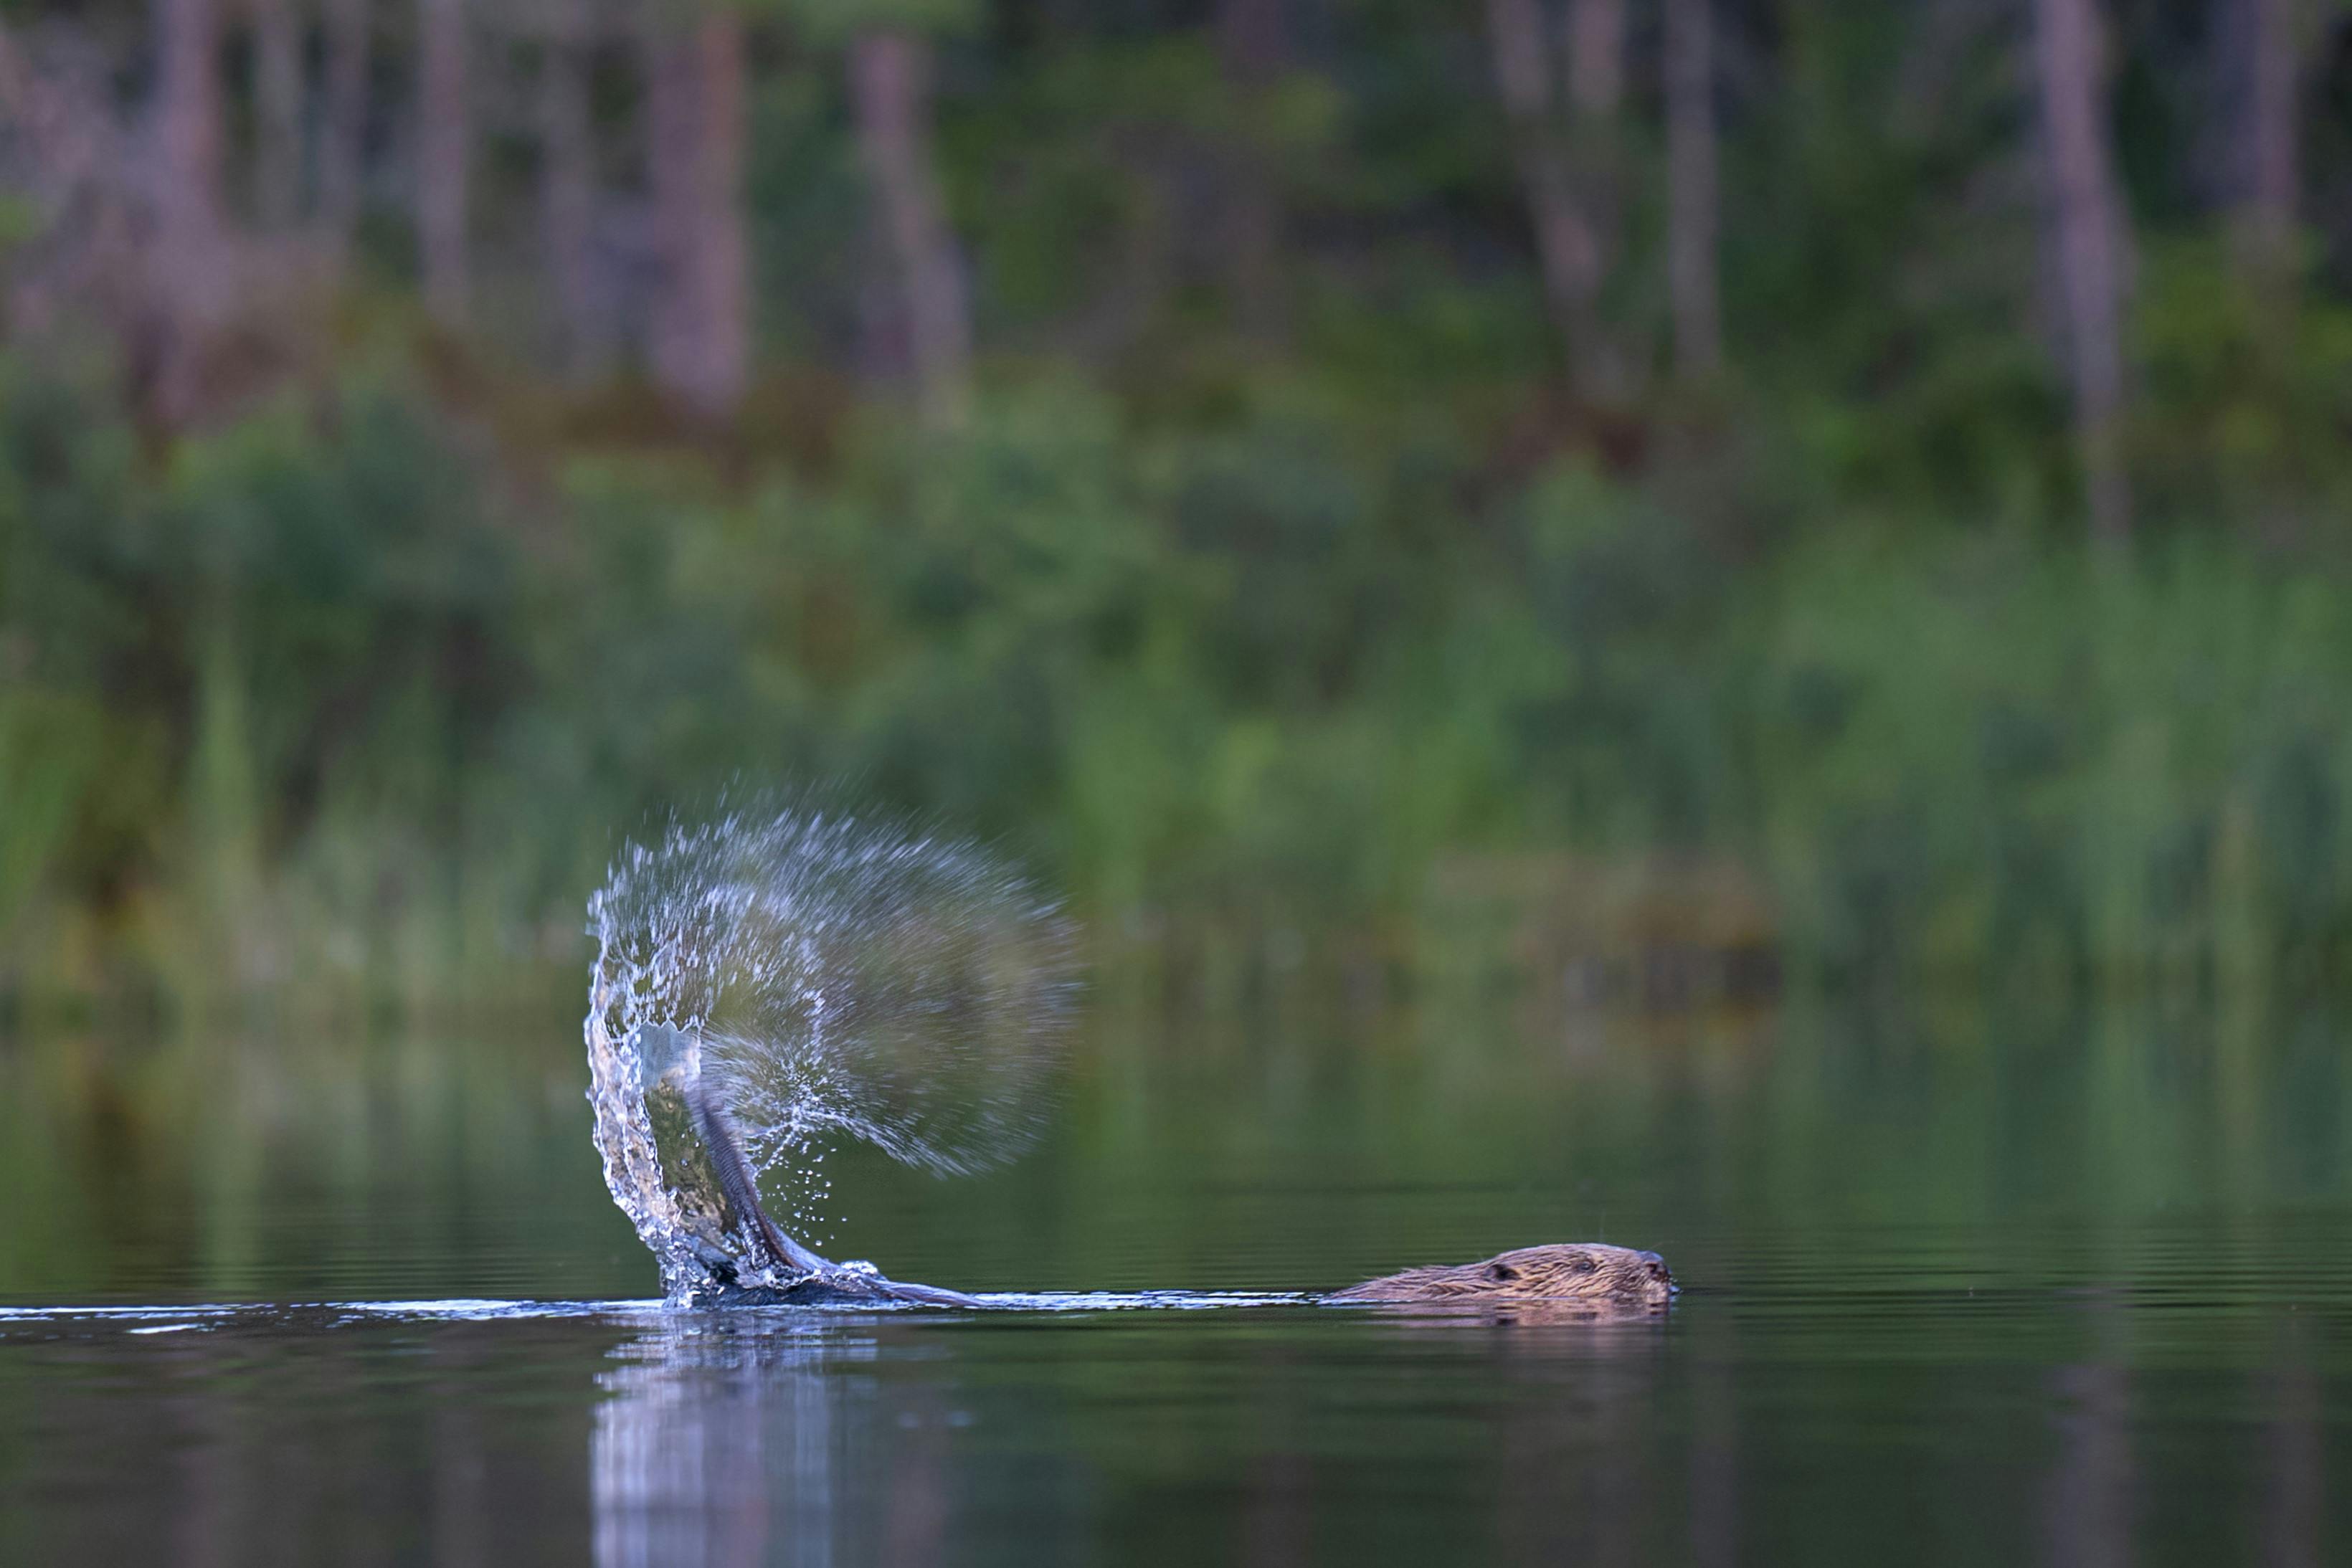 Biber schlägt mit seinem Schwanz auf die Wasseroberfläche und schickt Tropfen in die Luft, fotografiert während der Biber-Safari in Schweden von Nordic Discovery.